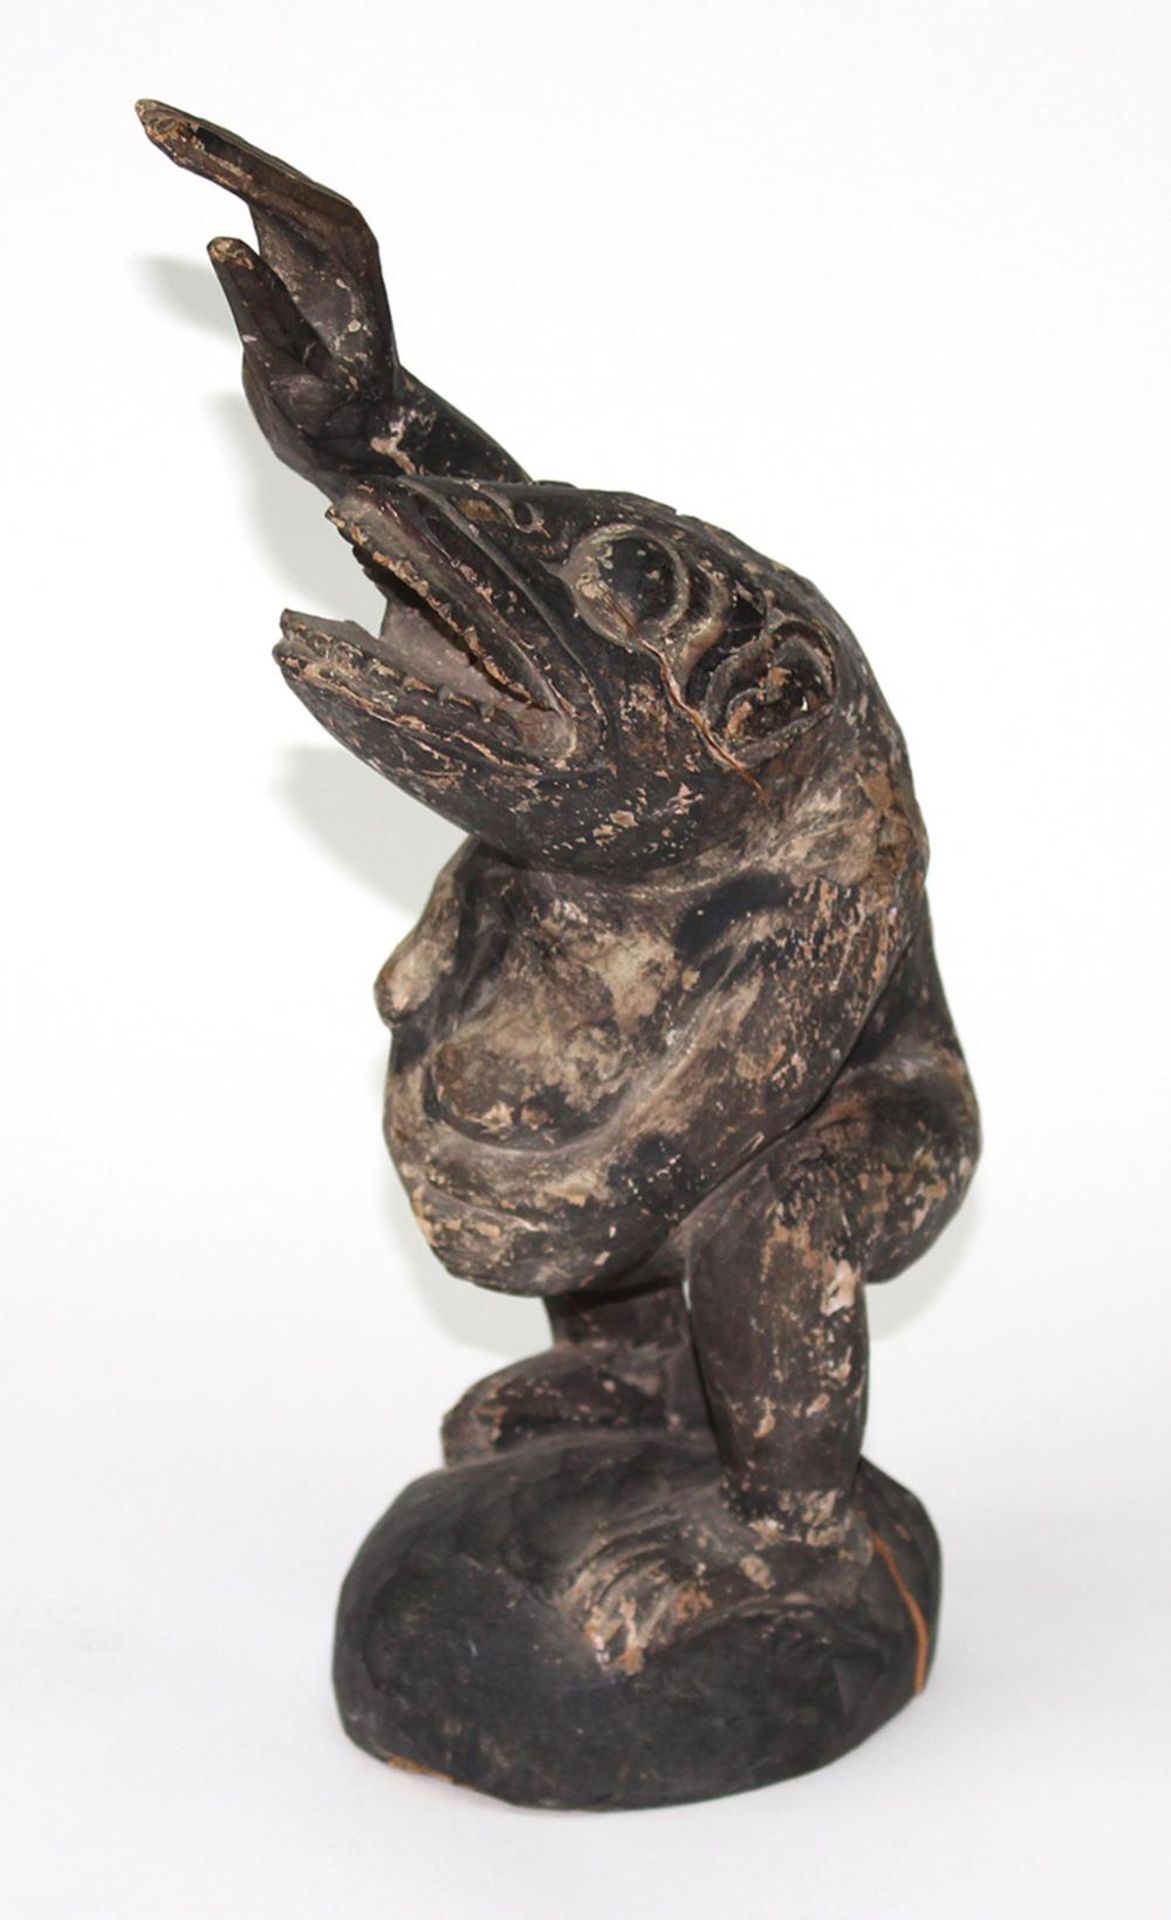 Holzschnitzerei, Kröte.Karikative Darstellung einer stehenden, trächtigen Kröte mit erhobenem